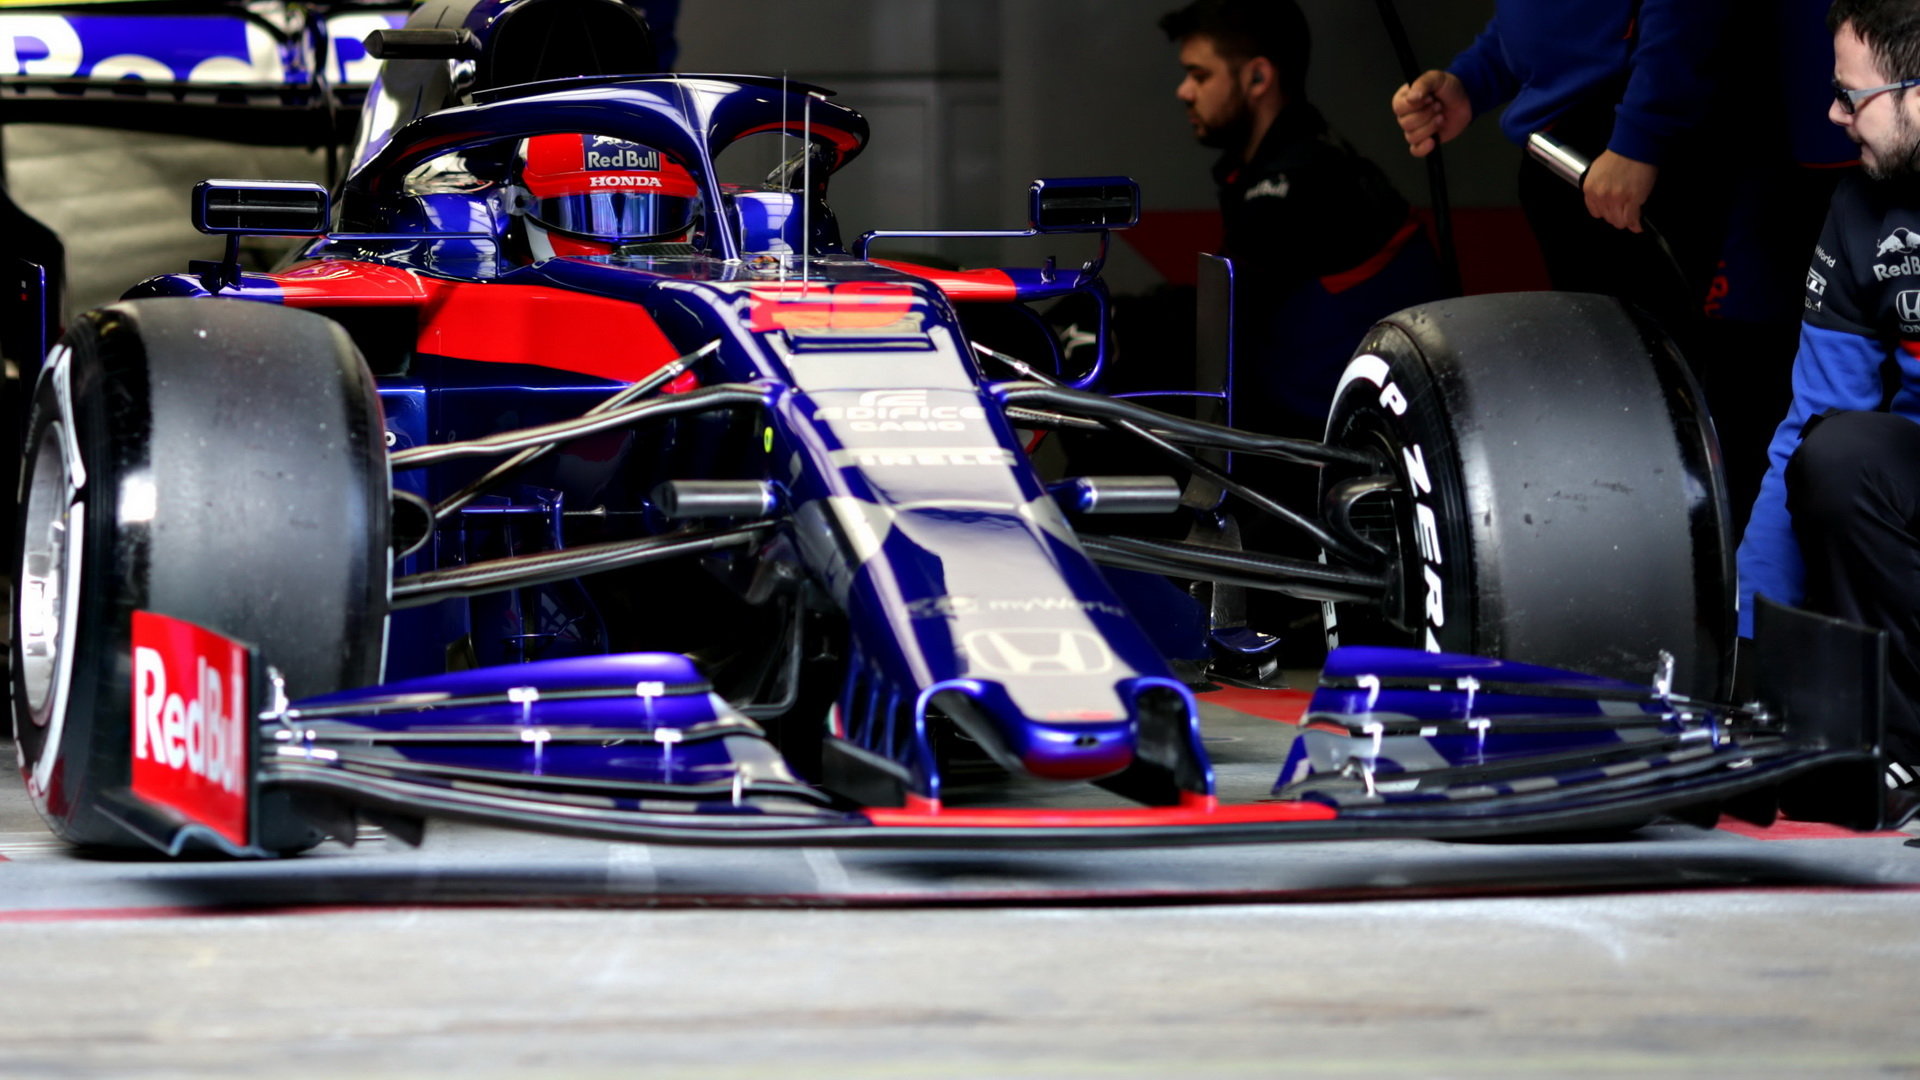 Daniil Kvjat v novém voze Toro Rosso STR14 - Honda při testech v Barceloně